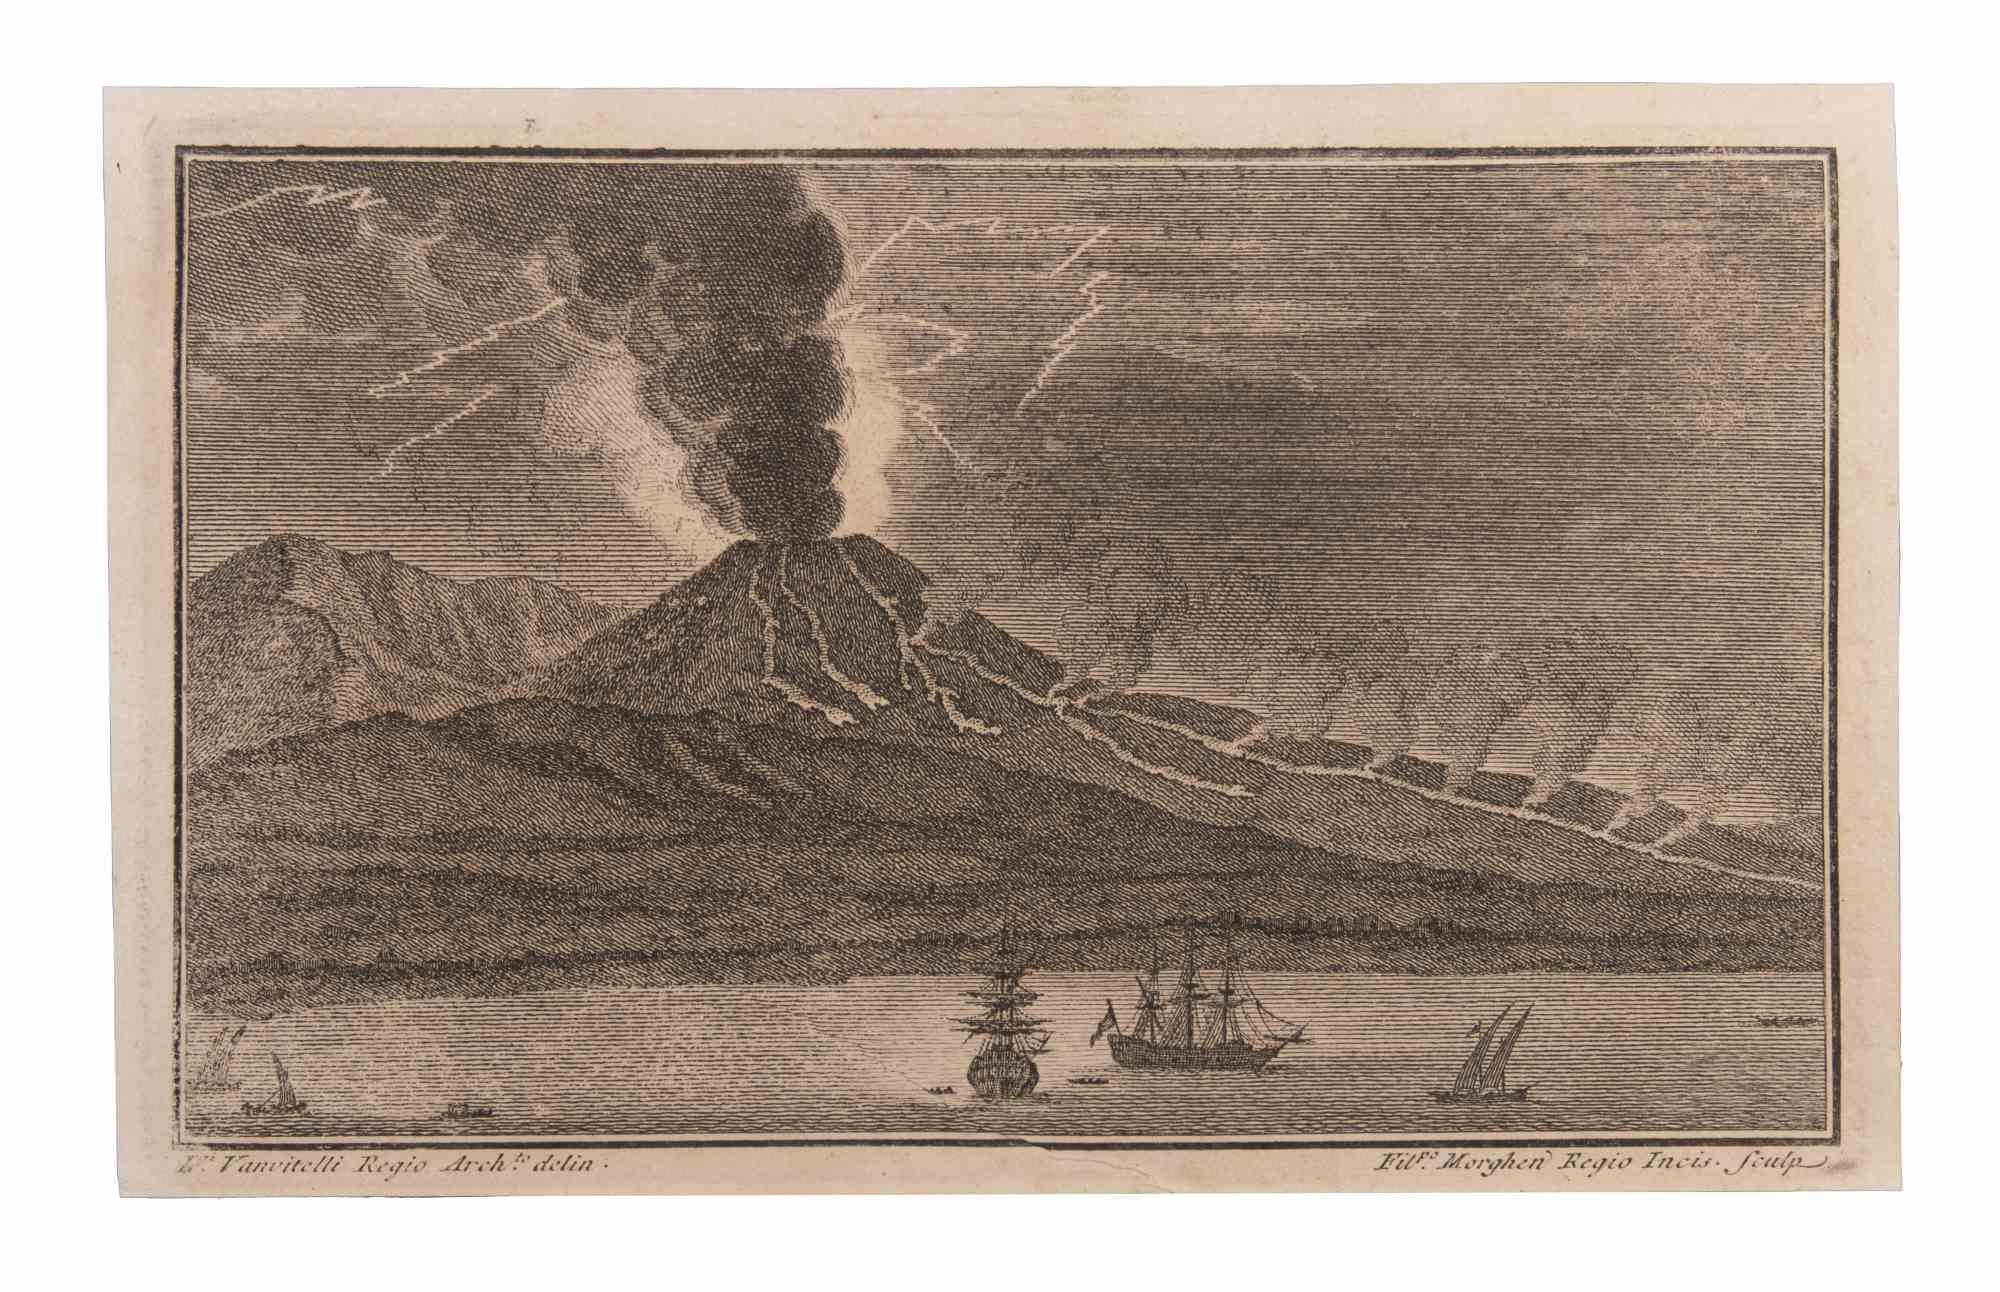 Seascape With Vesuvio and Boats est une gravure réalisée par  Filippo Morghen (1730-1807).

La gravure appartient à la suite d'estampes "Antiquités d'Herculanum exposées" (titre original : "Le Antichità di Ercolano Esposte"), un volume de huit